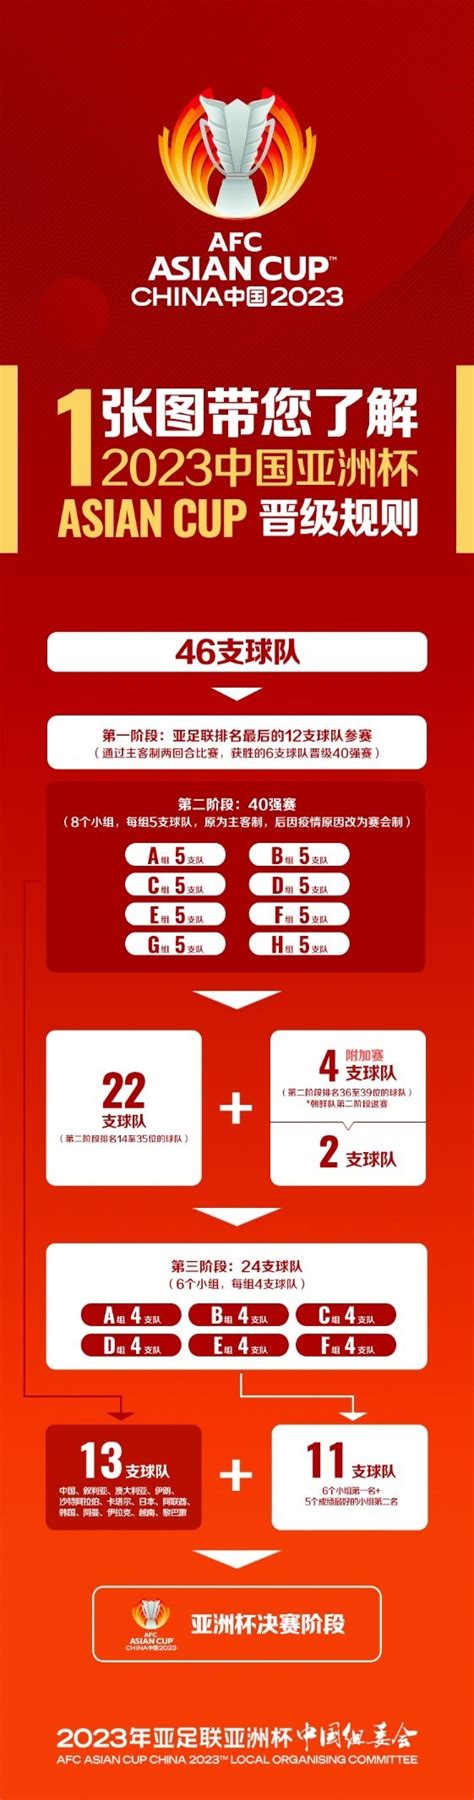 2021男篮亚洲杯预选赛时间及赛制介绍- 深圳本地宝